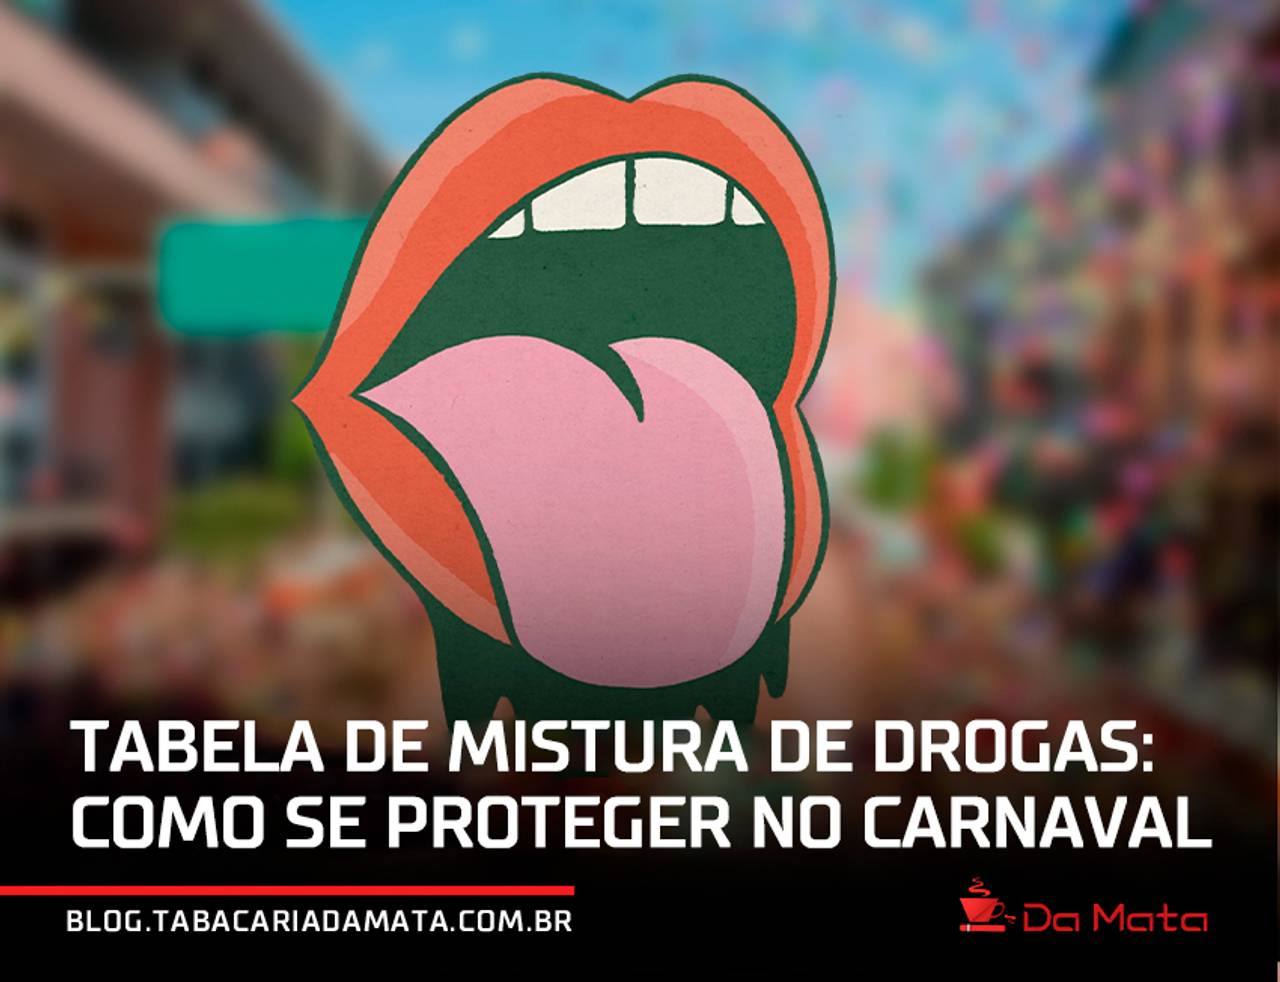 imagem gráfica de uma boca com a lingua para fora escrito "Tabela de mistura de drogas: como se proteger no carnaval" na parte inferior